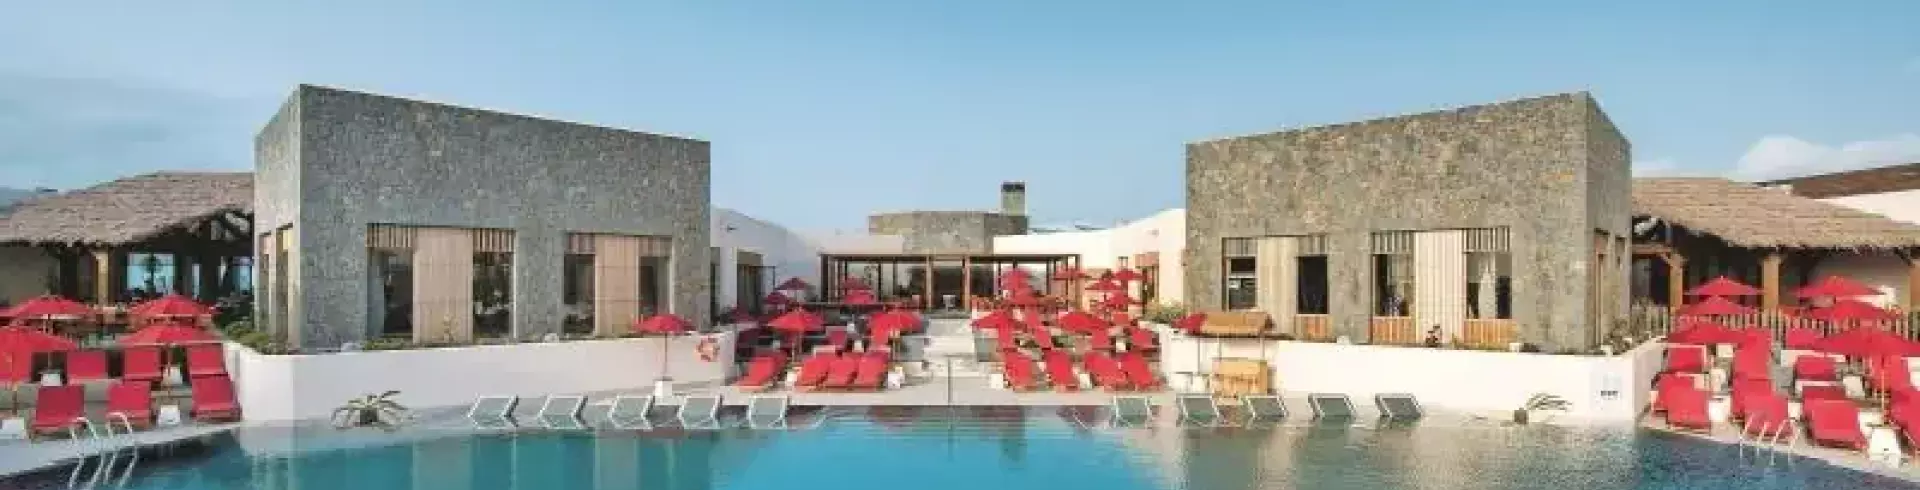 Pierre et Vacances Village Club Fuerteventura Origo Mare